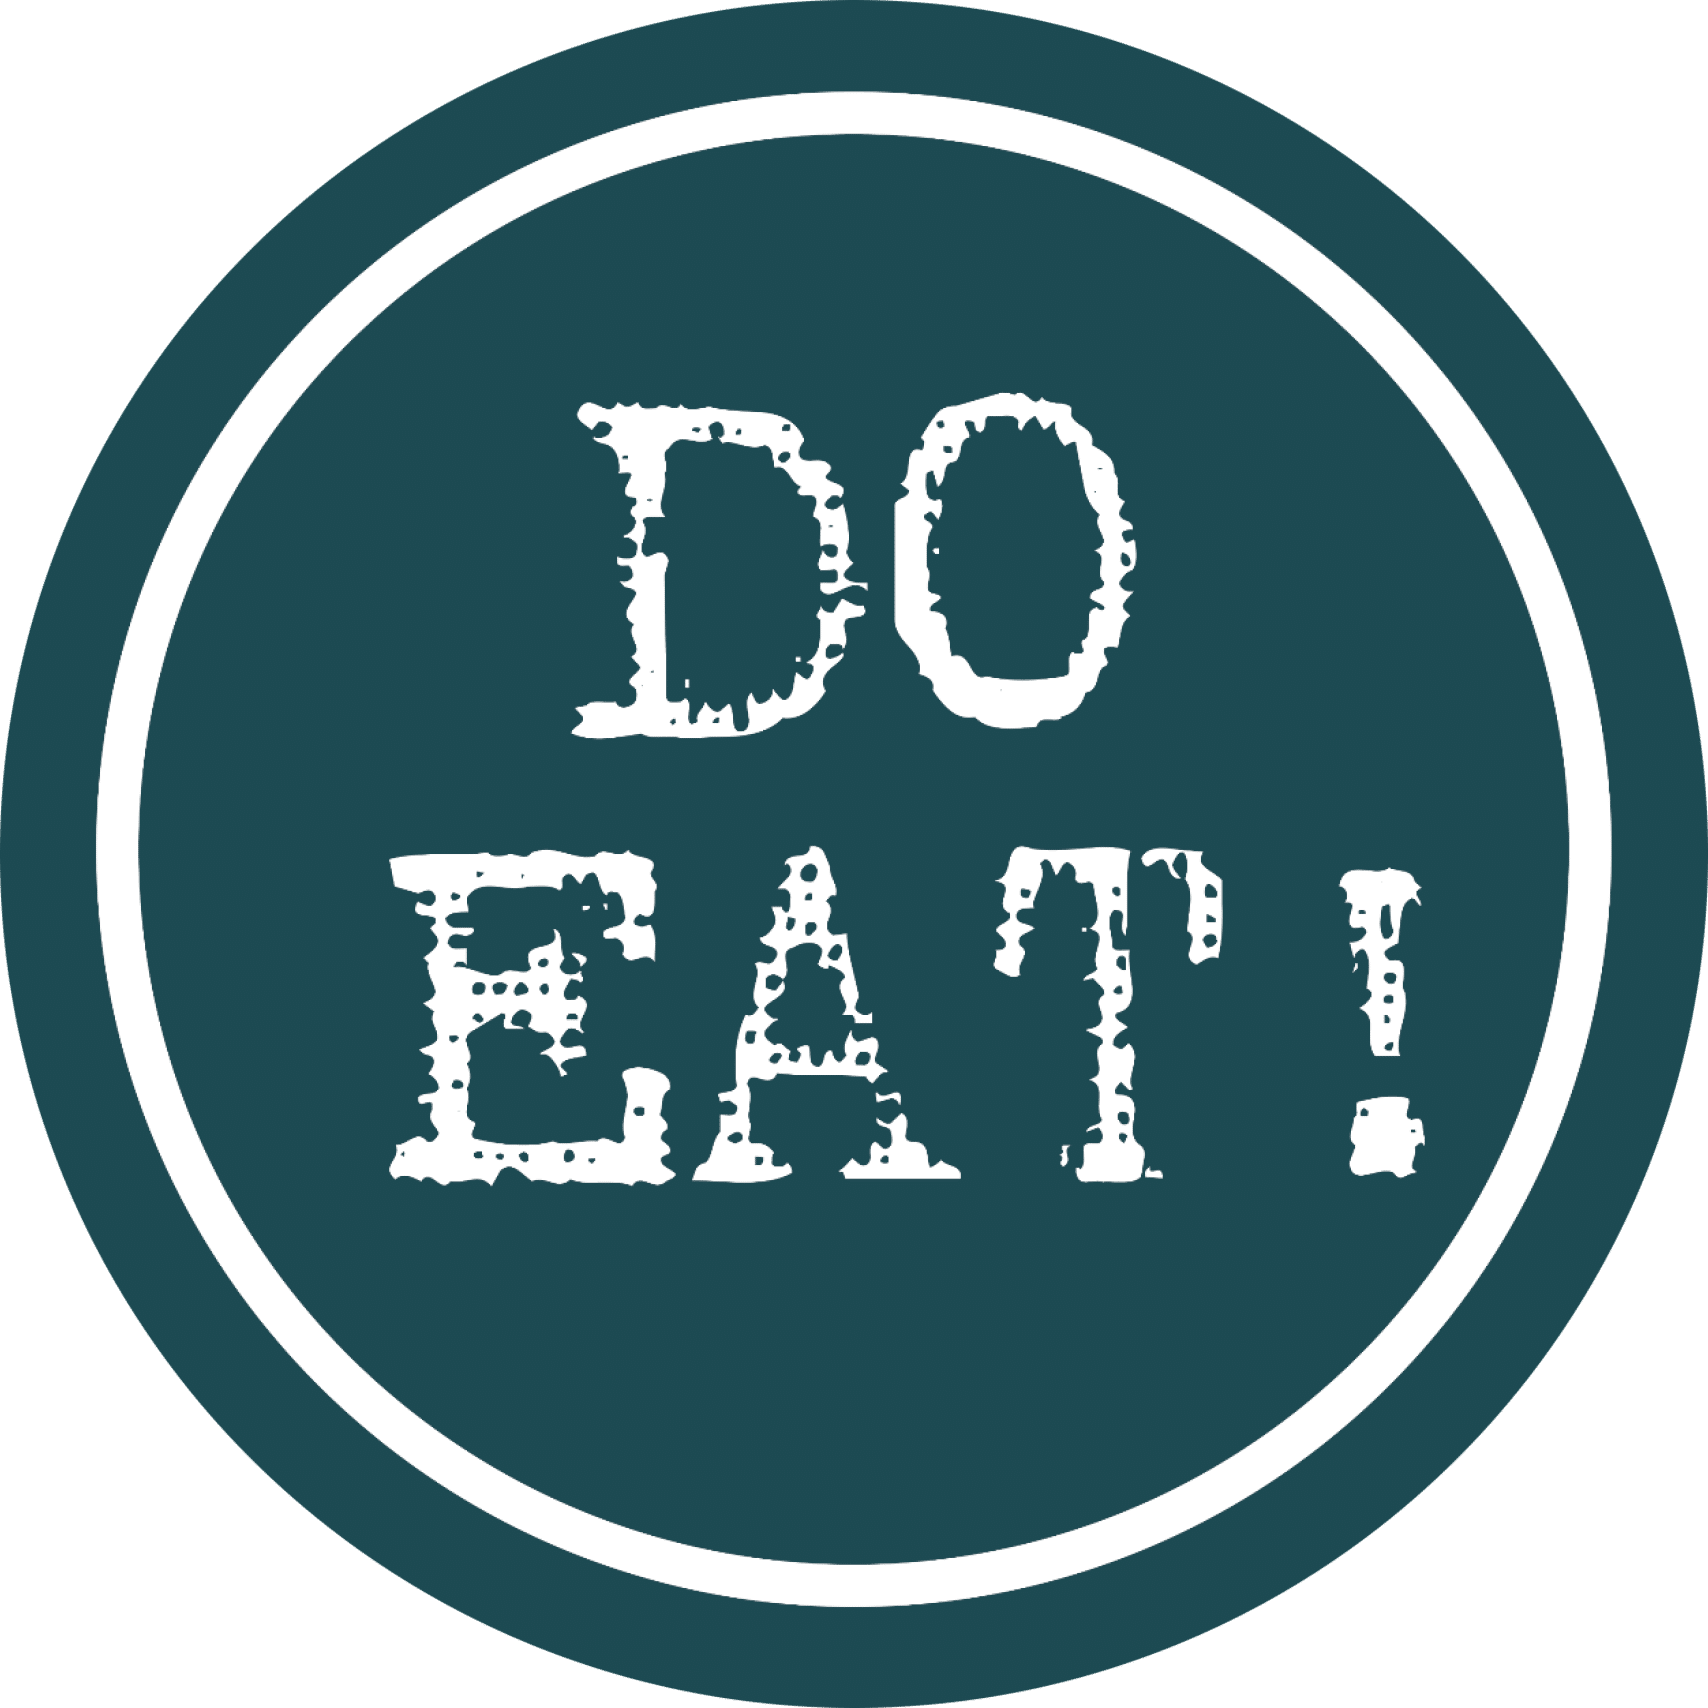 DO EAT!